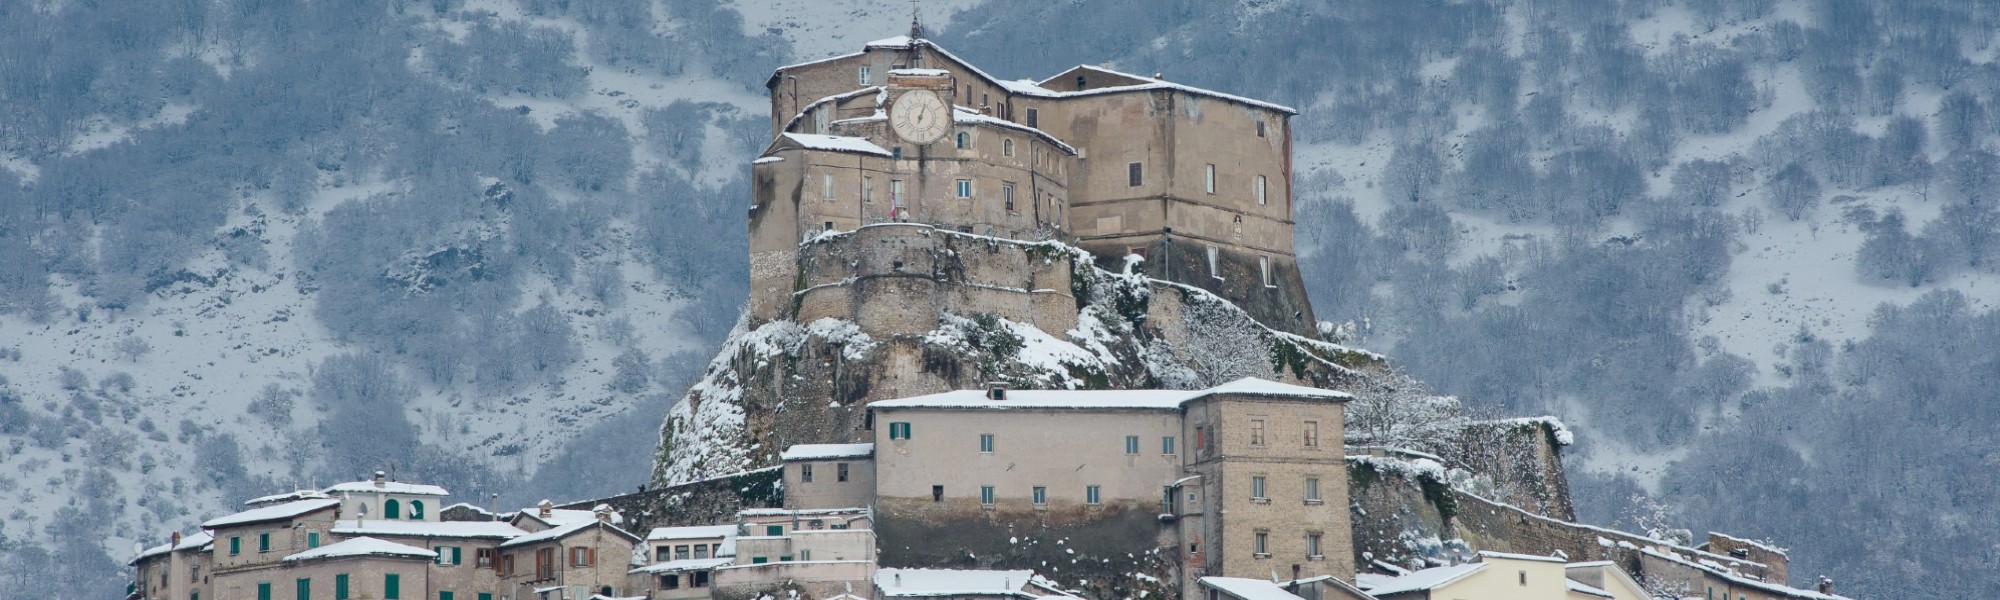 Italy castle hero image